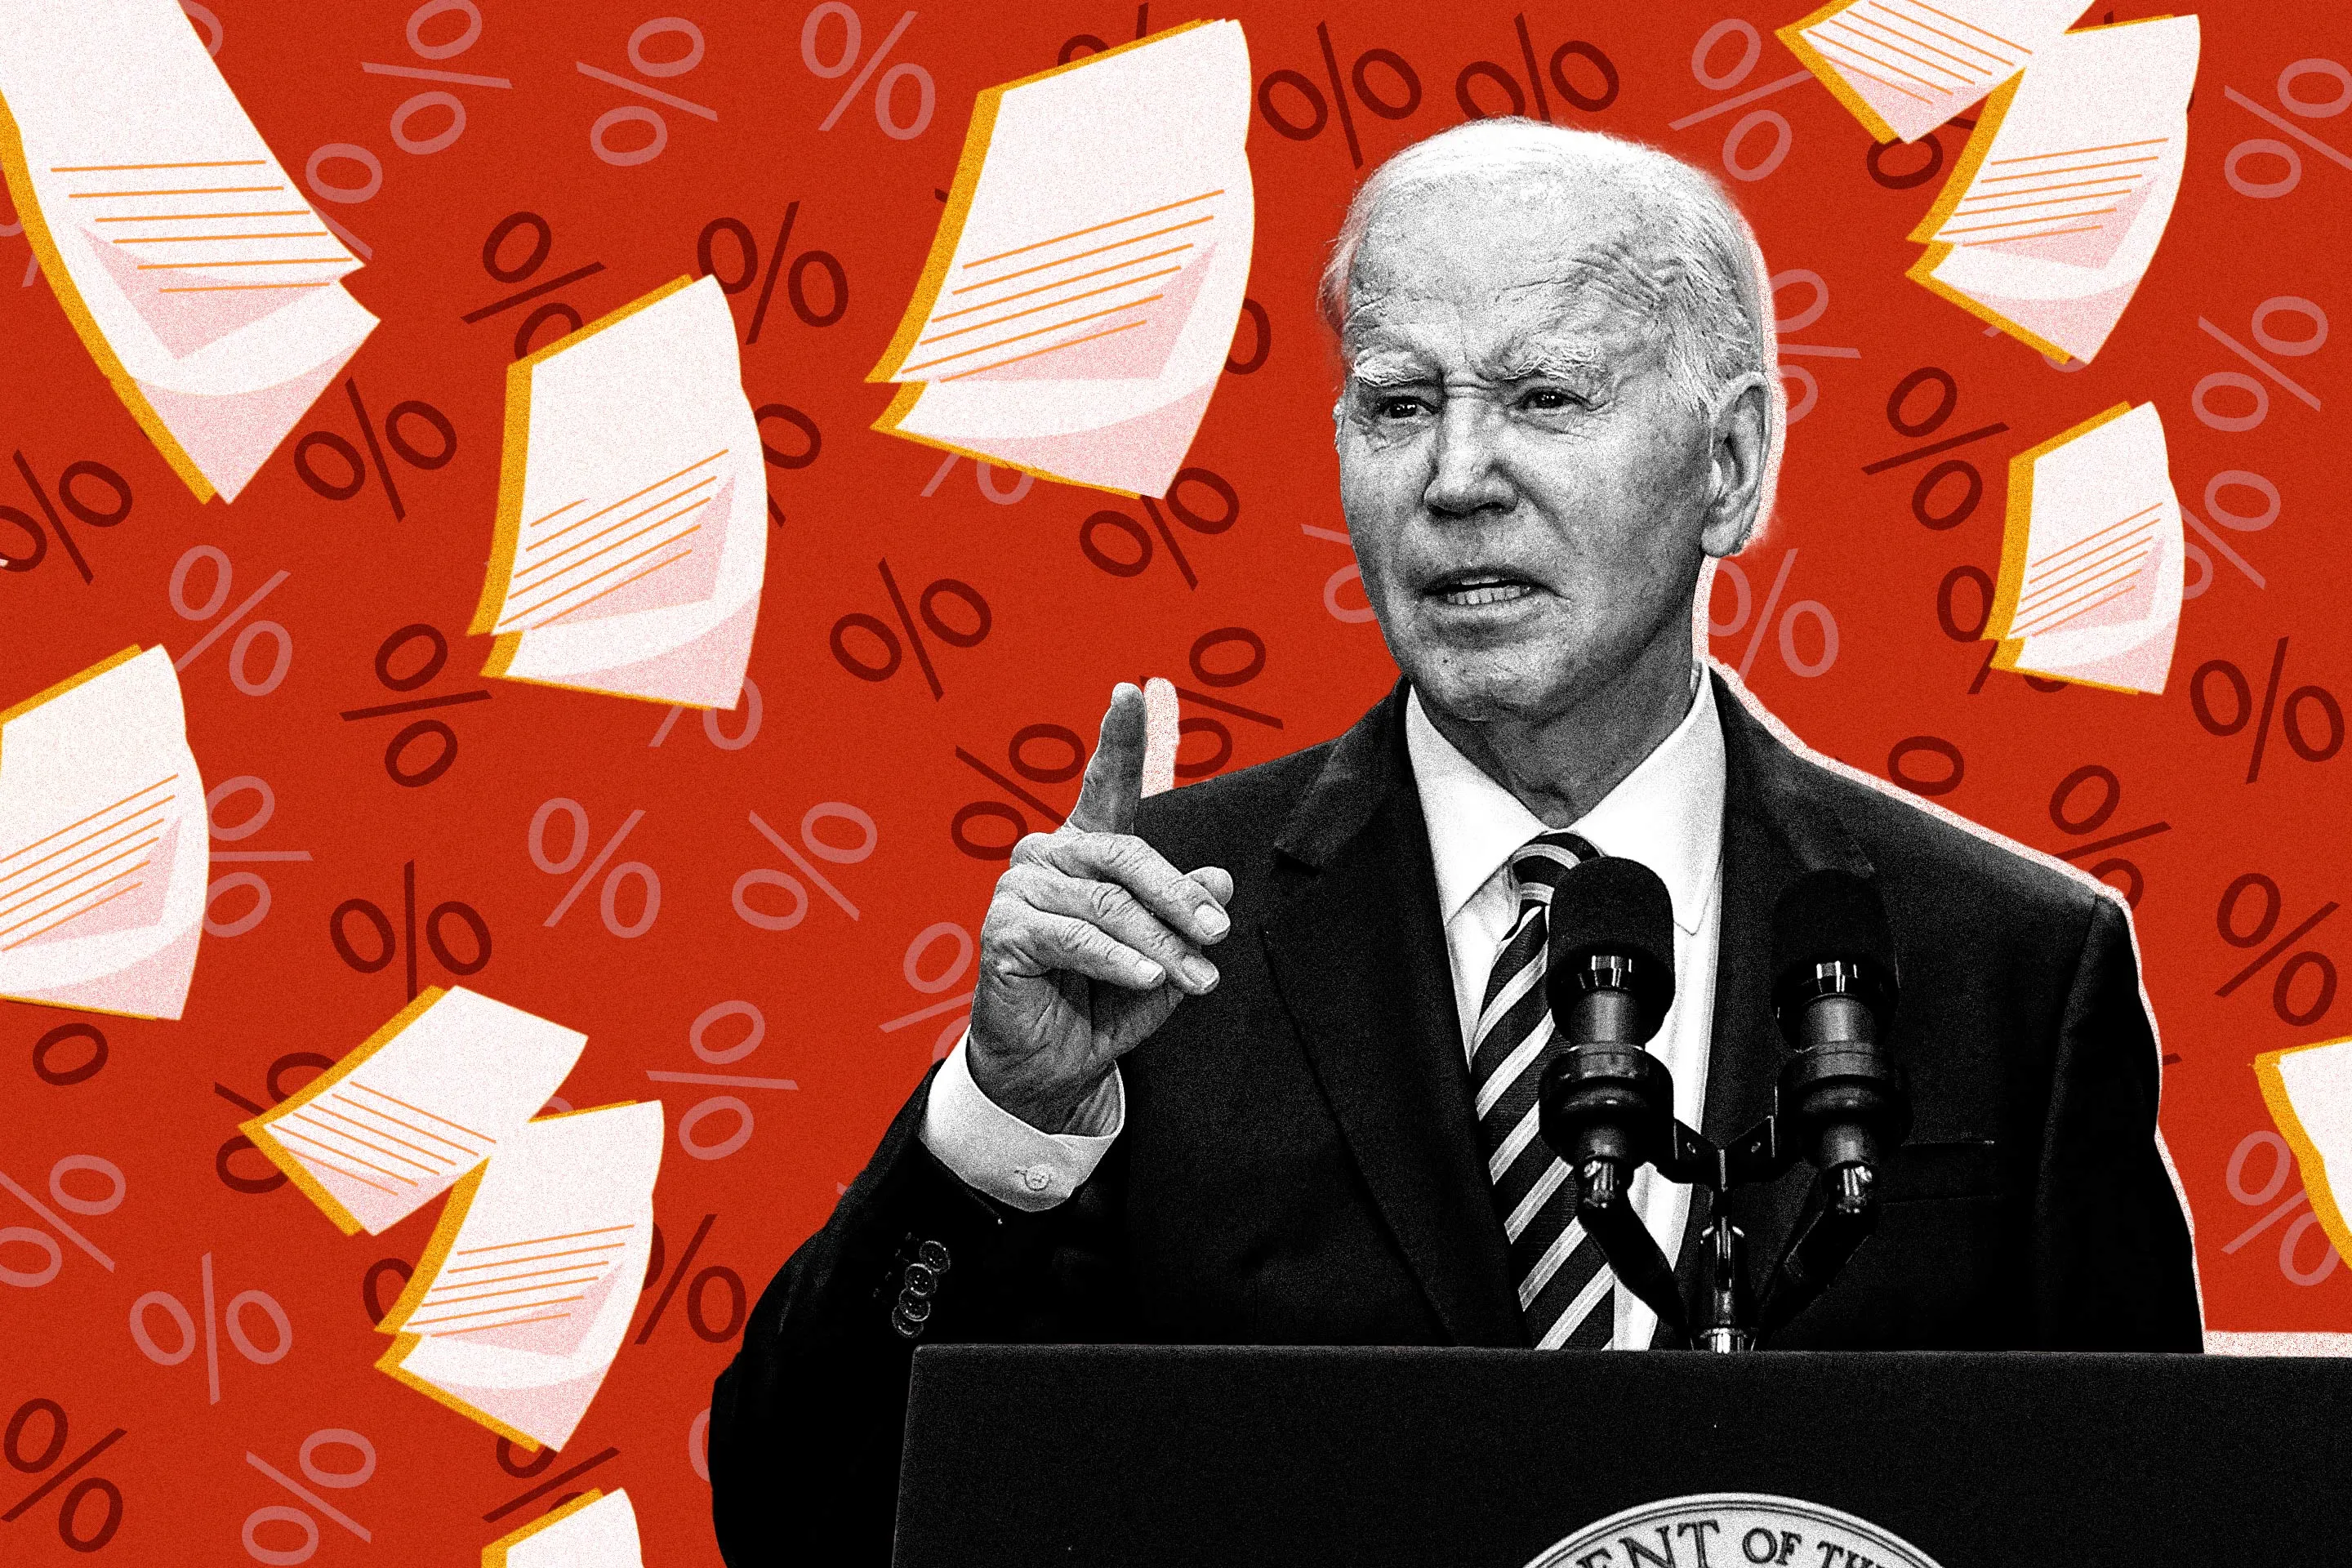 Biden's Junk Fee Crackdown Comes for Shady Retirement Advisors